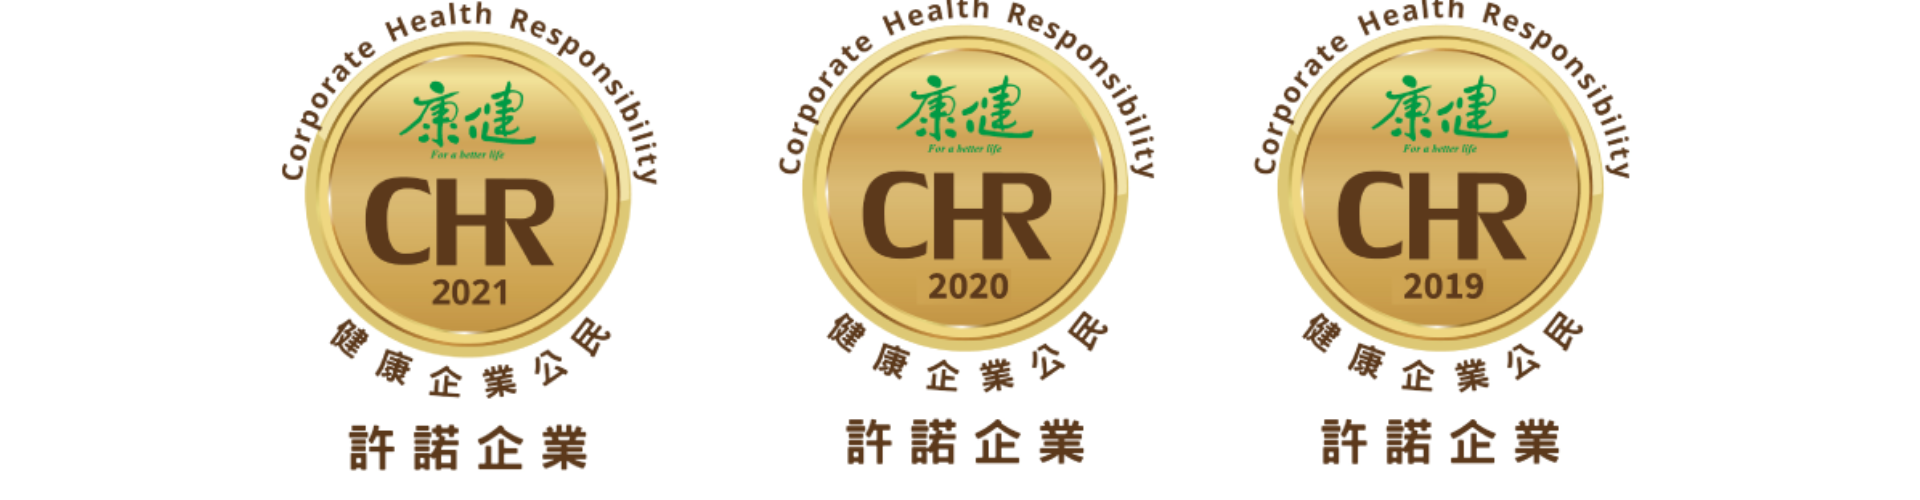 大世科-2021年康健雜誌「CHR健康企業公民許諾」企業